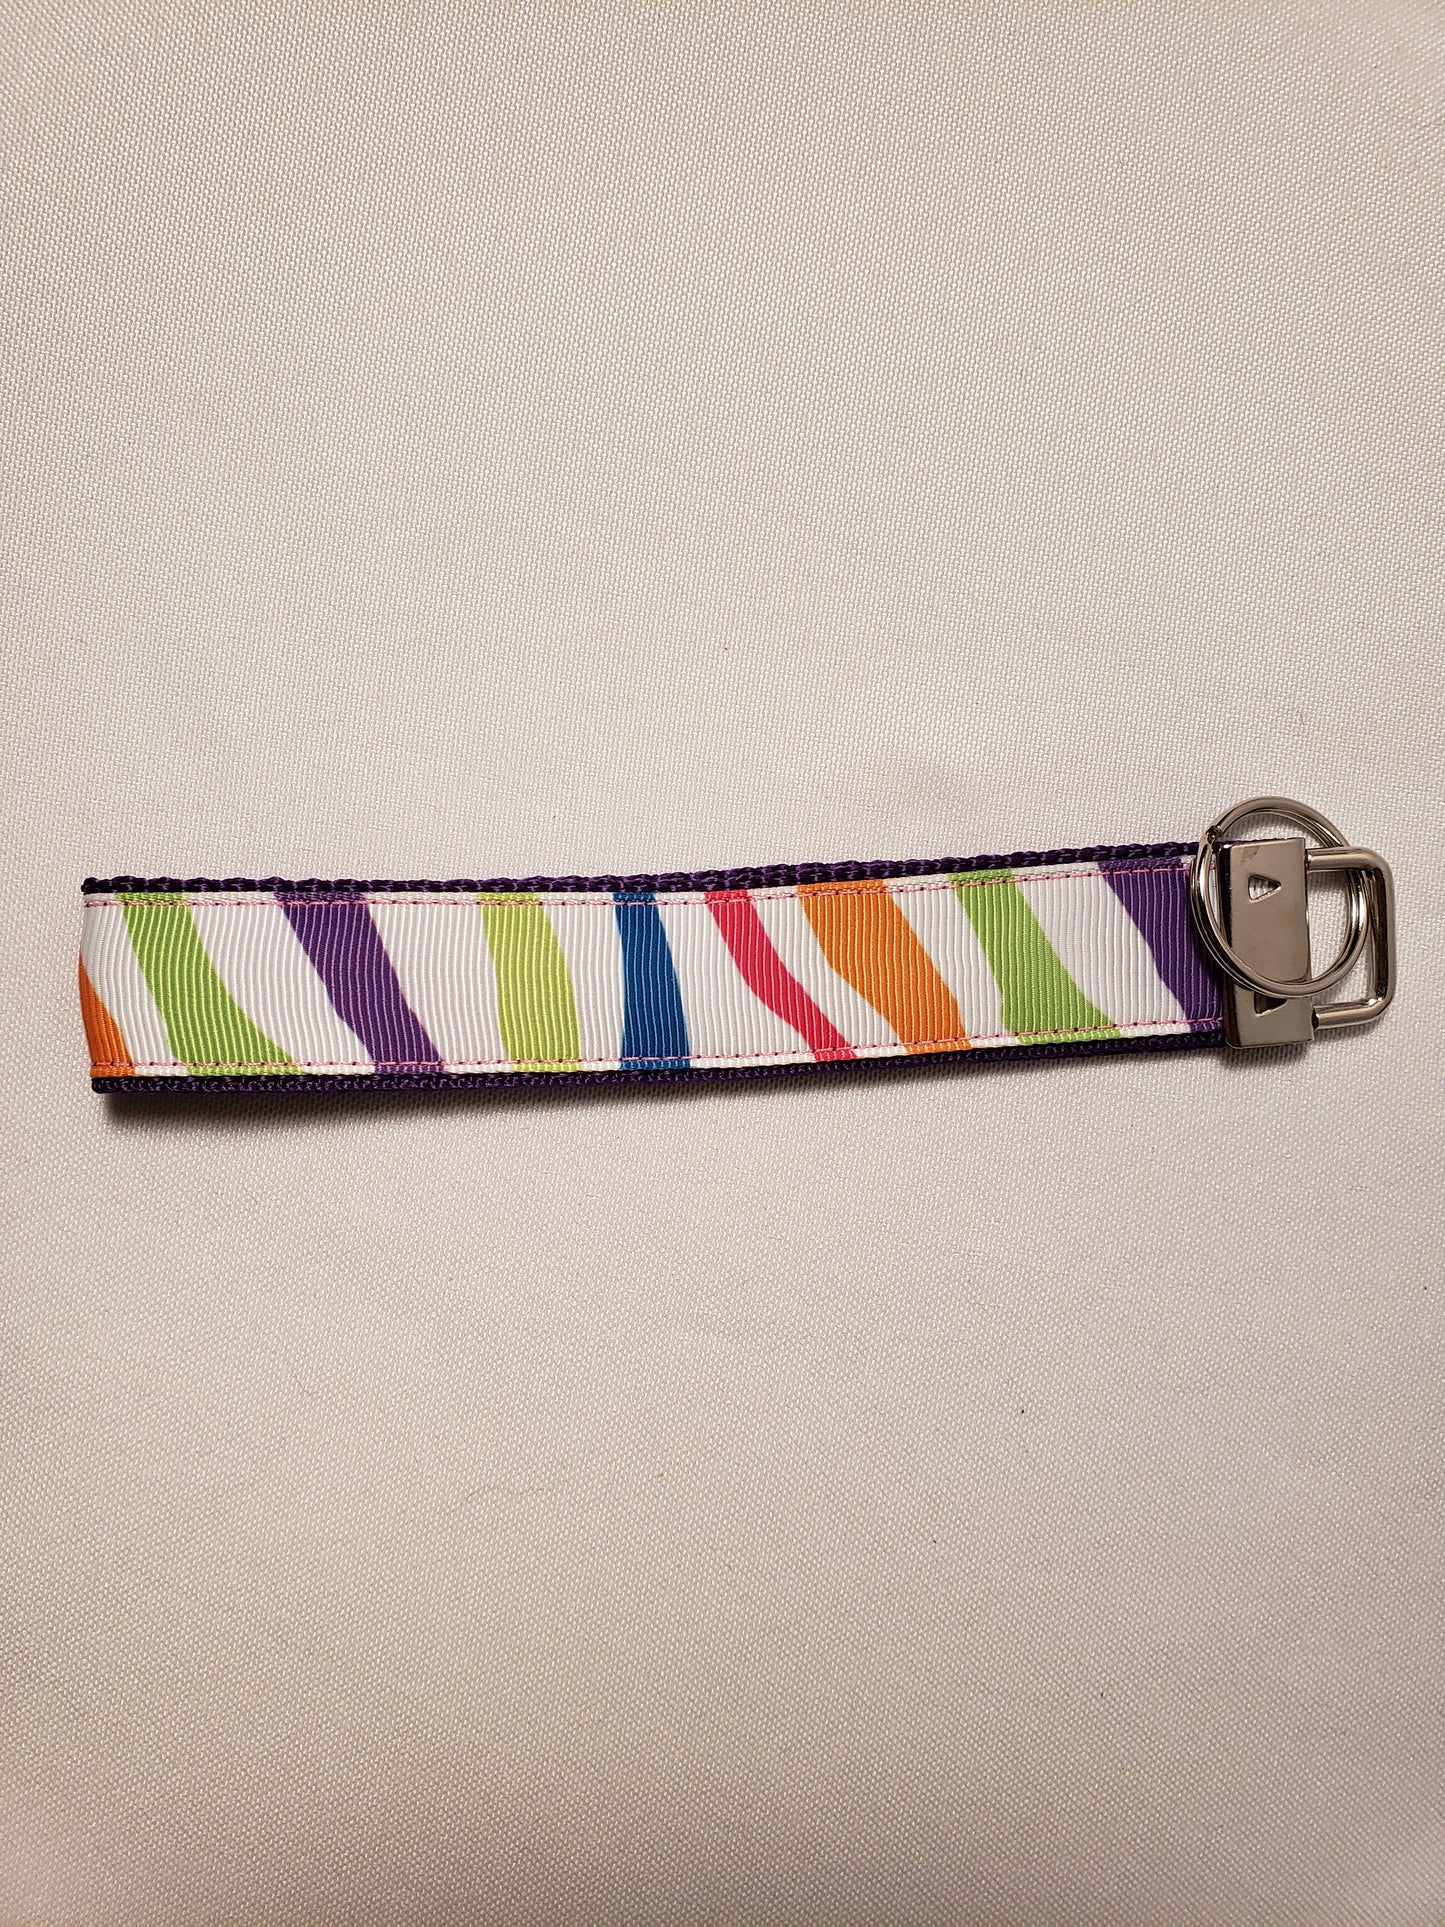 Rainbow Zebra Key Fob